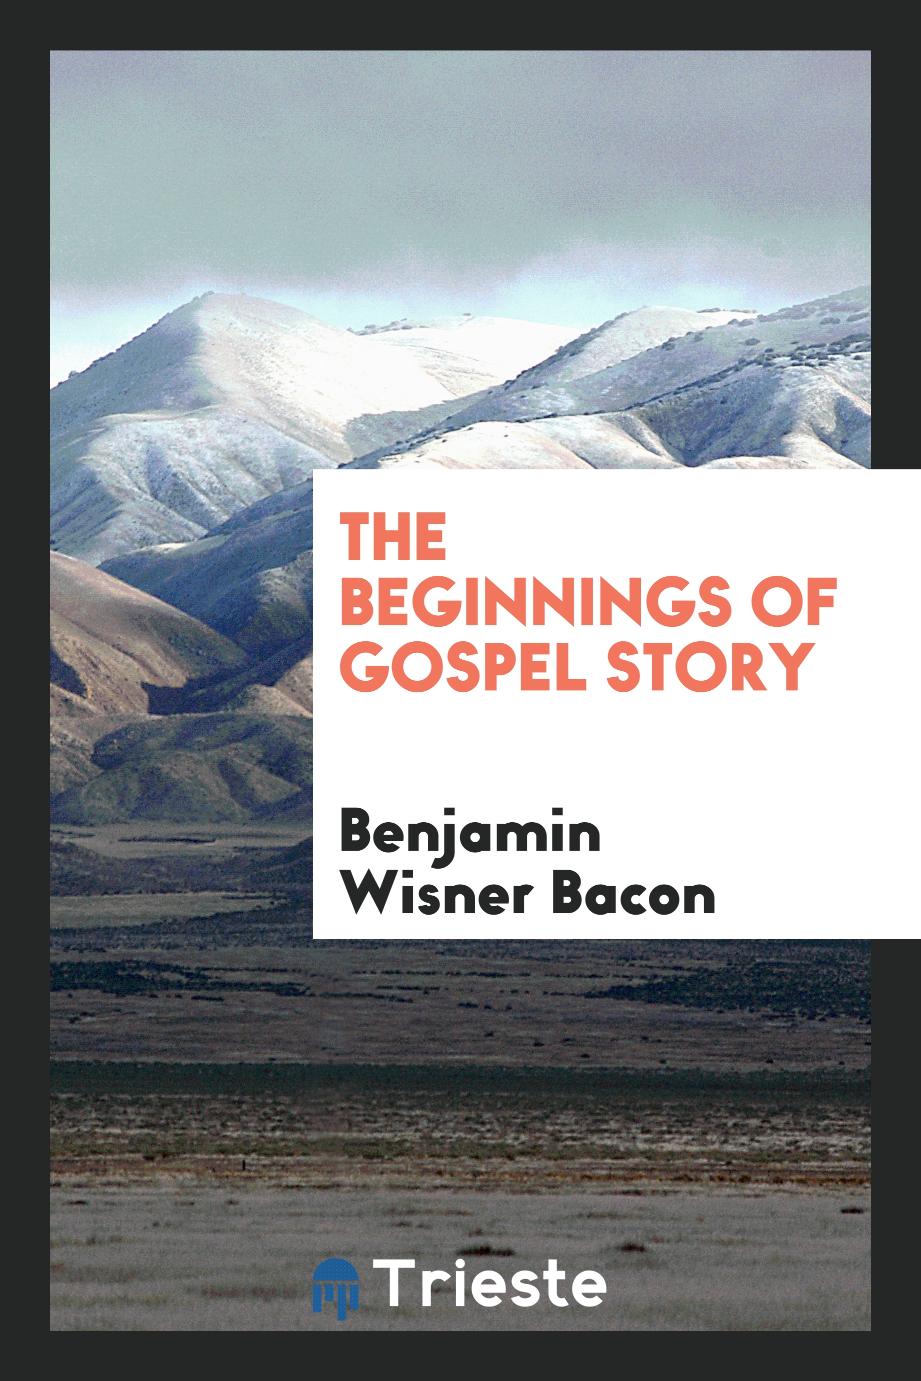 The beginnings of gospel story